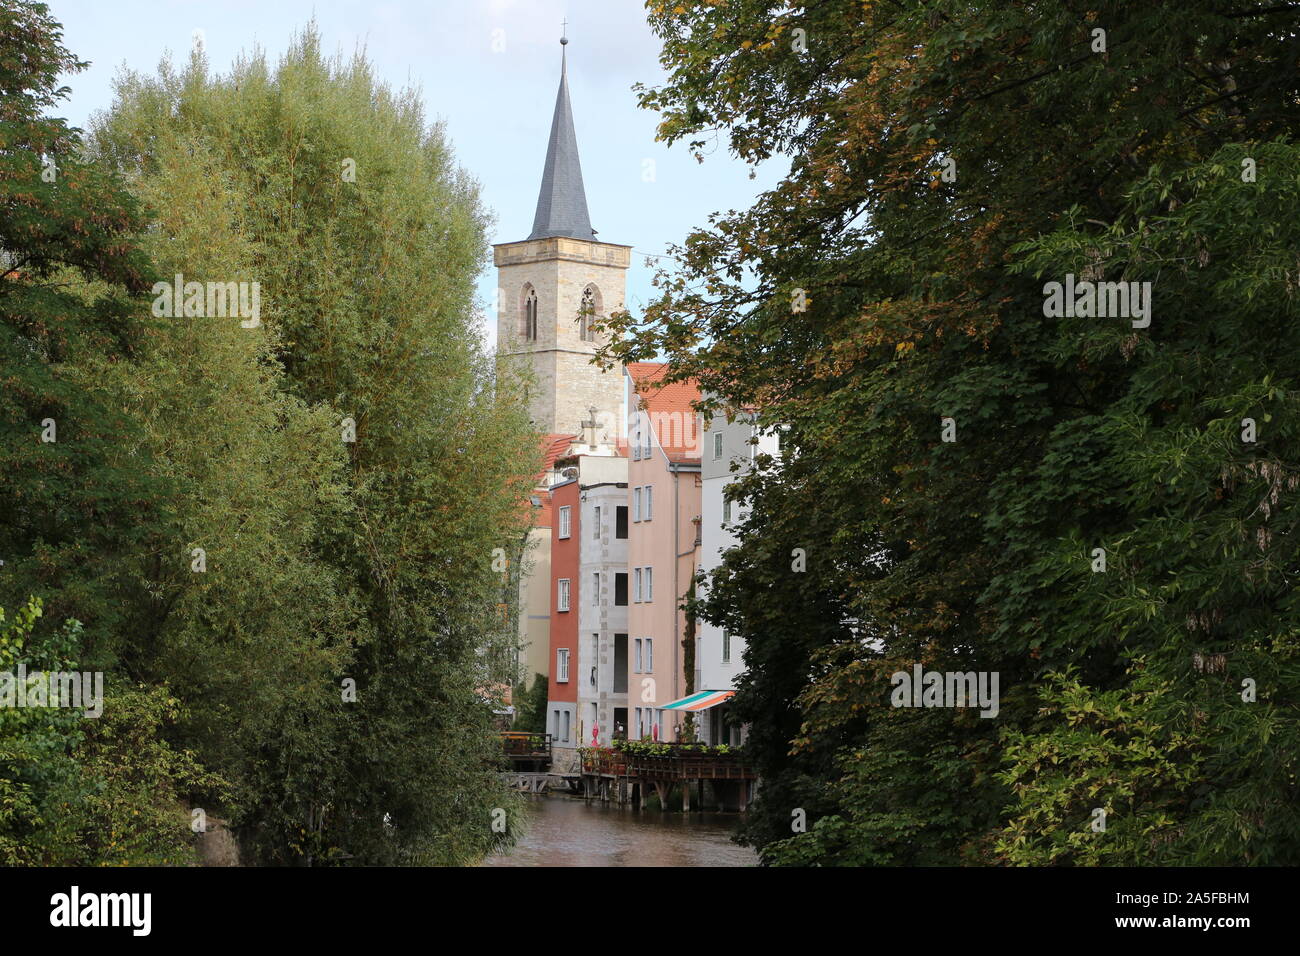 Historische Gebäude im Zentrum von Erfurt in Ostdeutschland Foto Stock